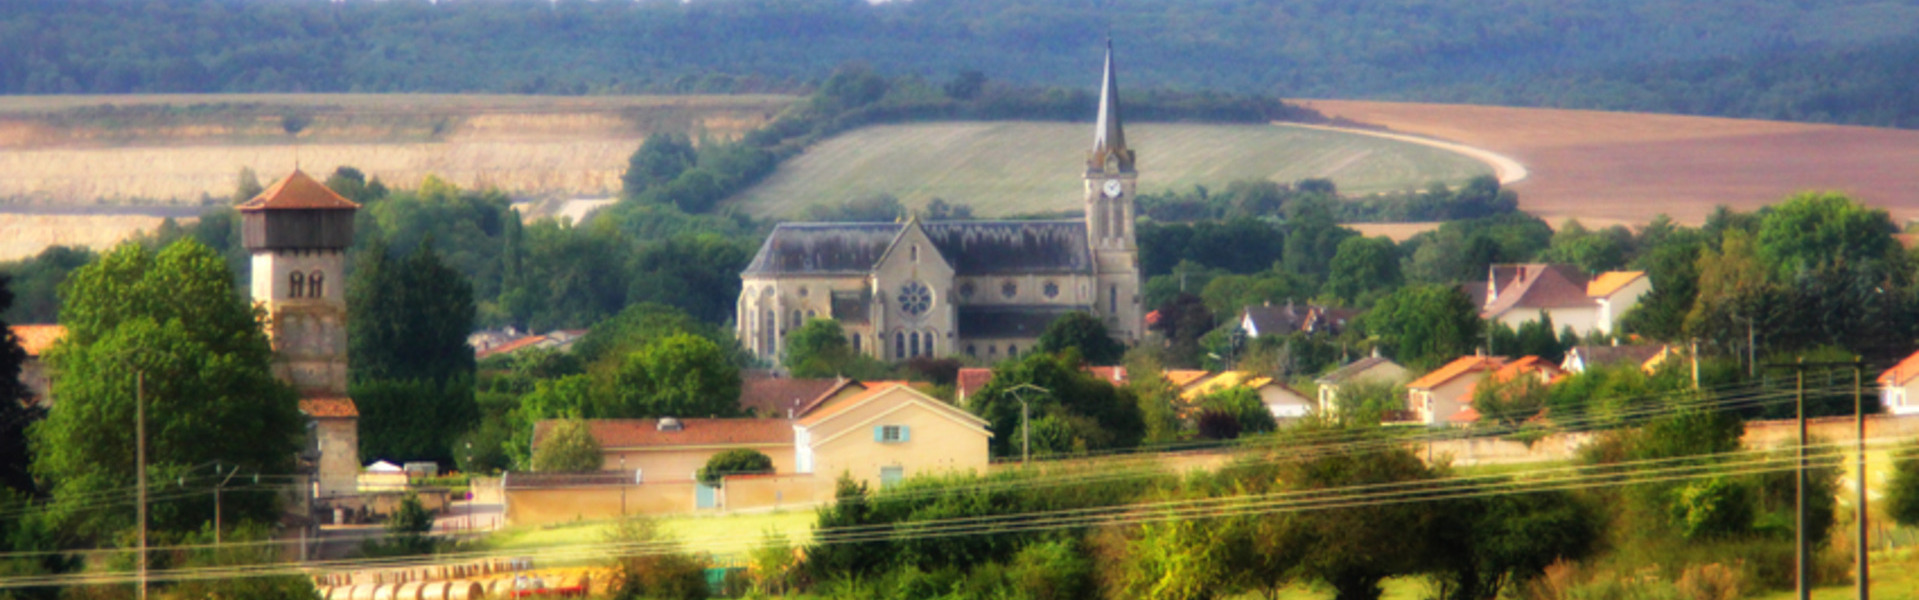 Commune de Dugny-sur-Meuse